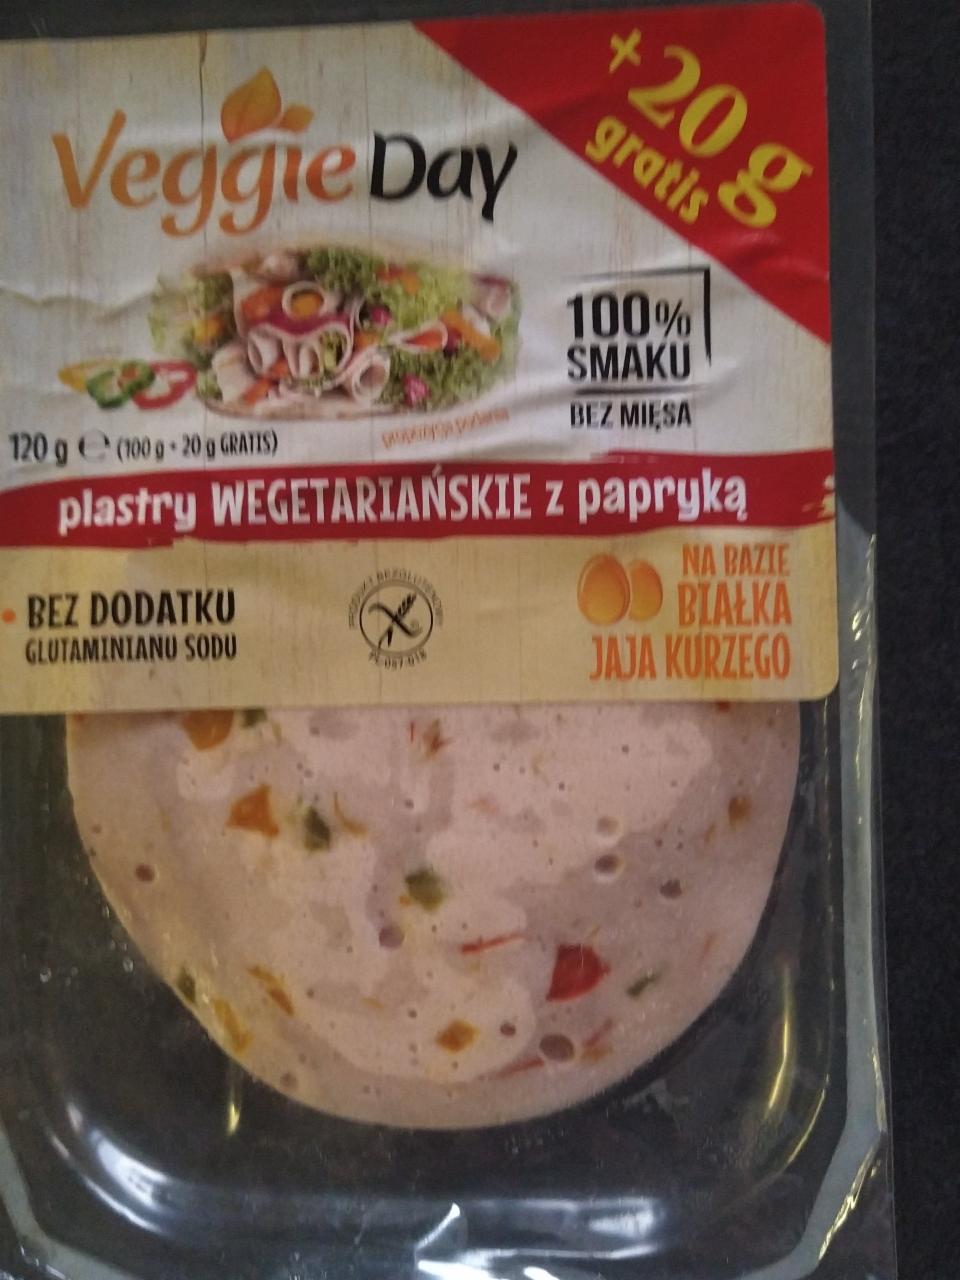 Fotografie - Plastry wegetariańskie z papryką VeggieDay